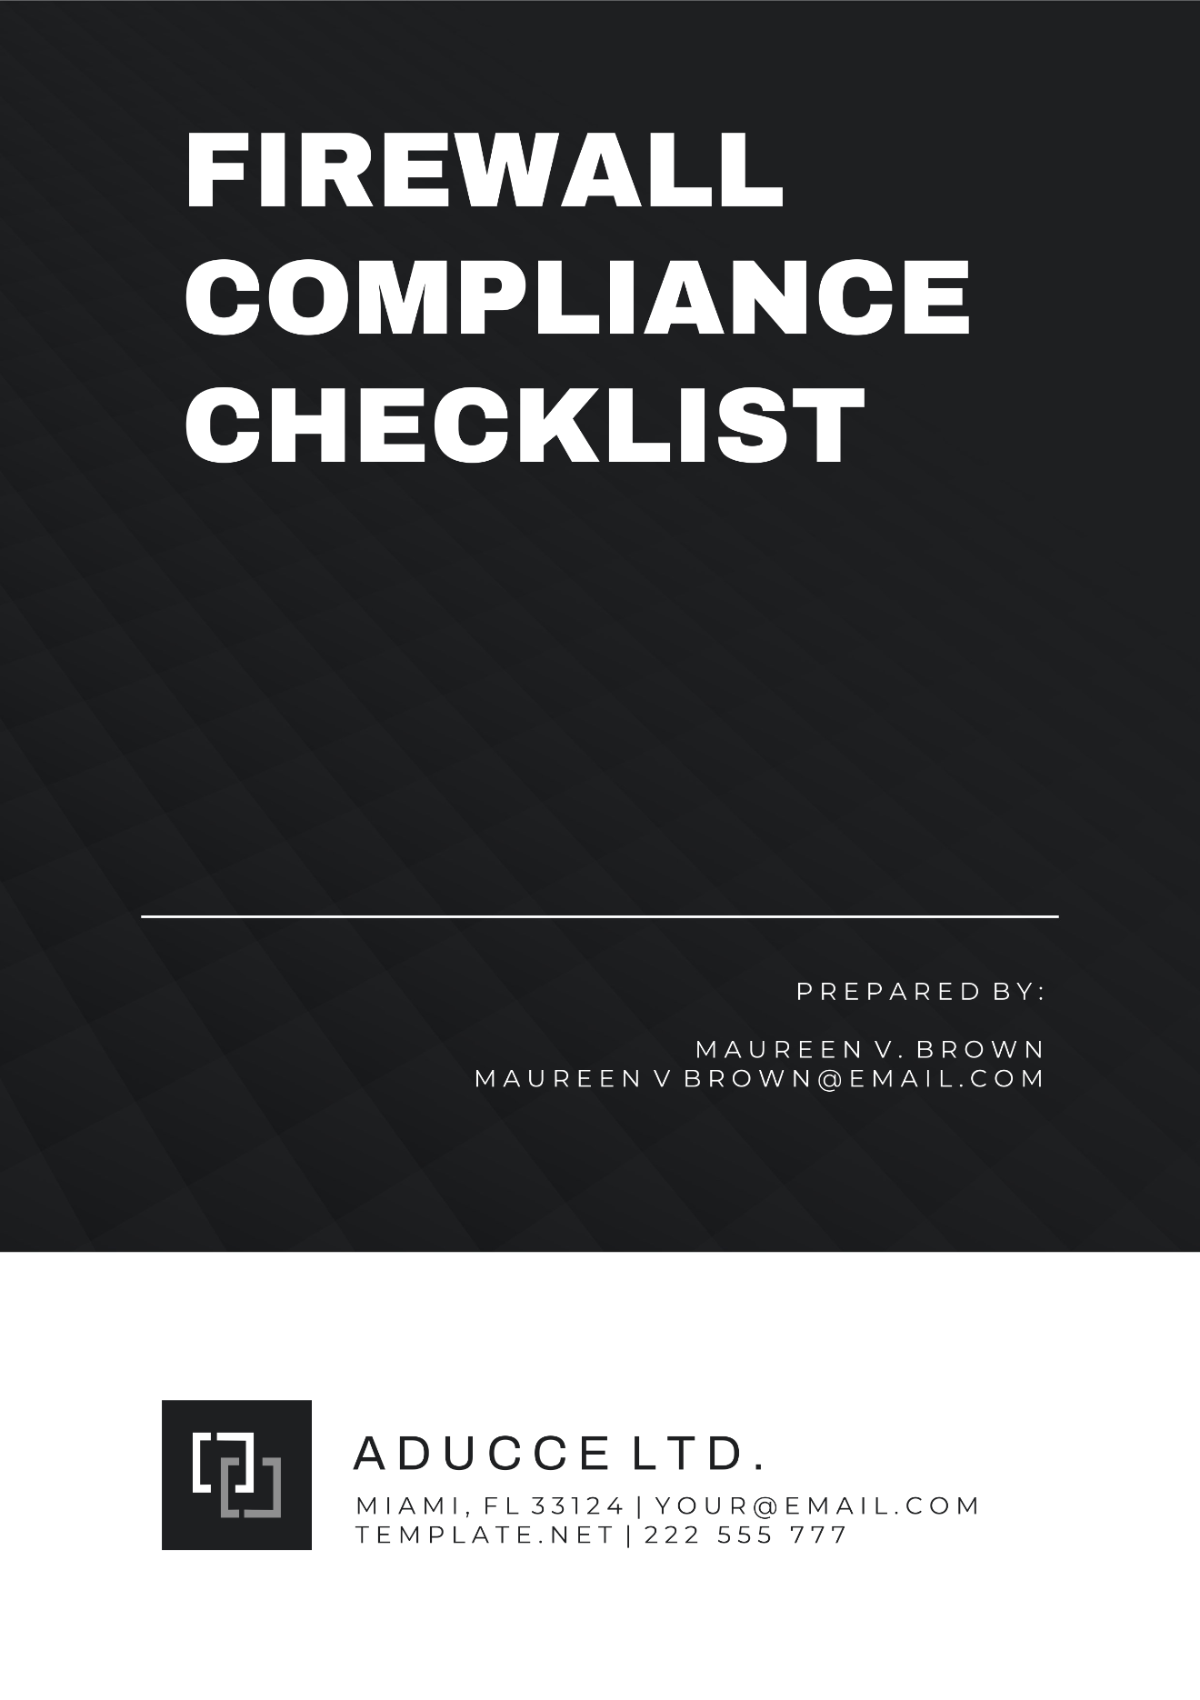 Firewall Compliance Checklist Template